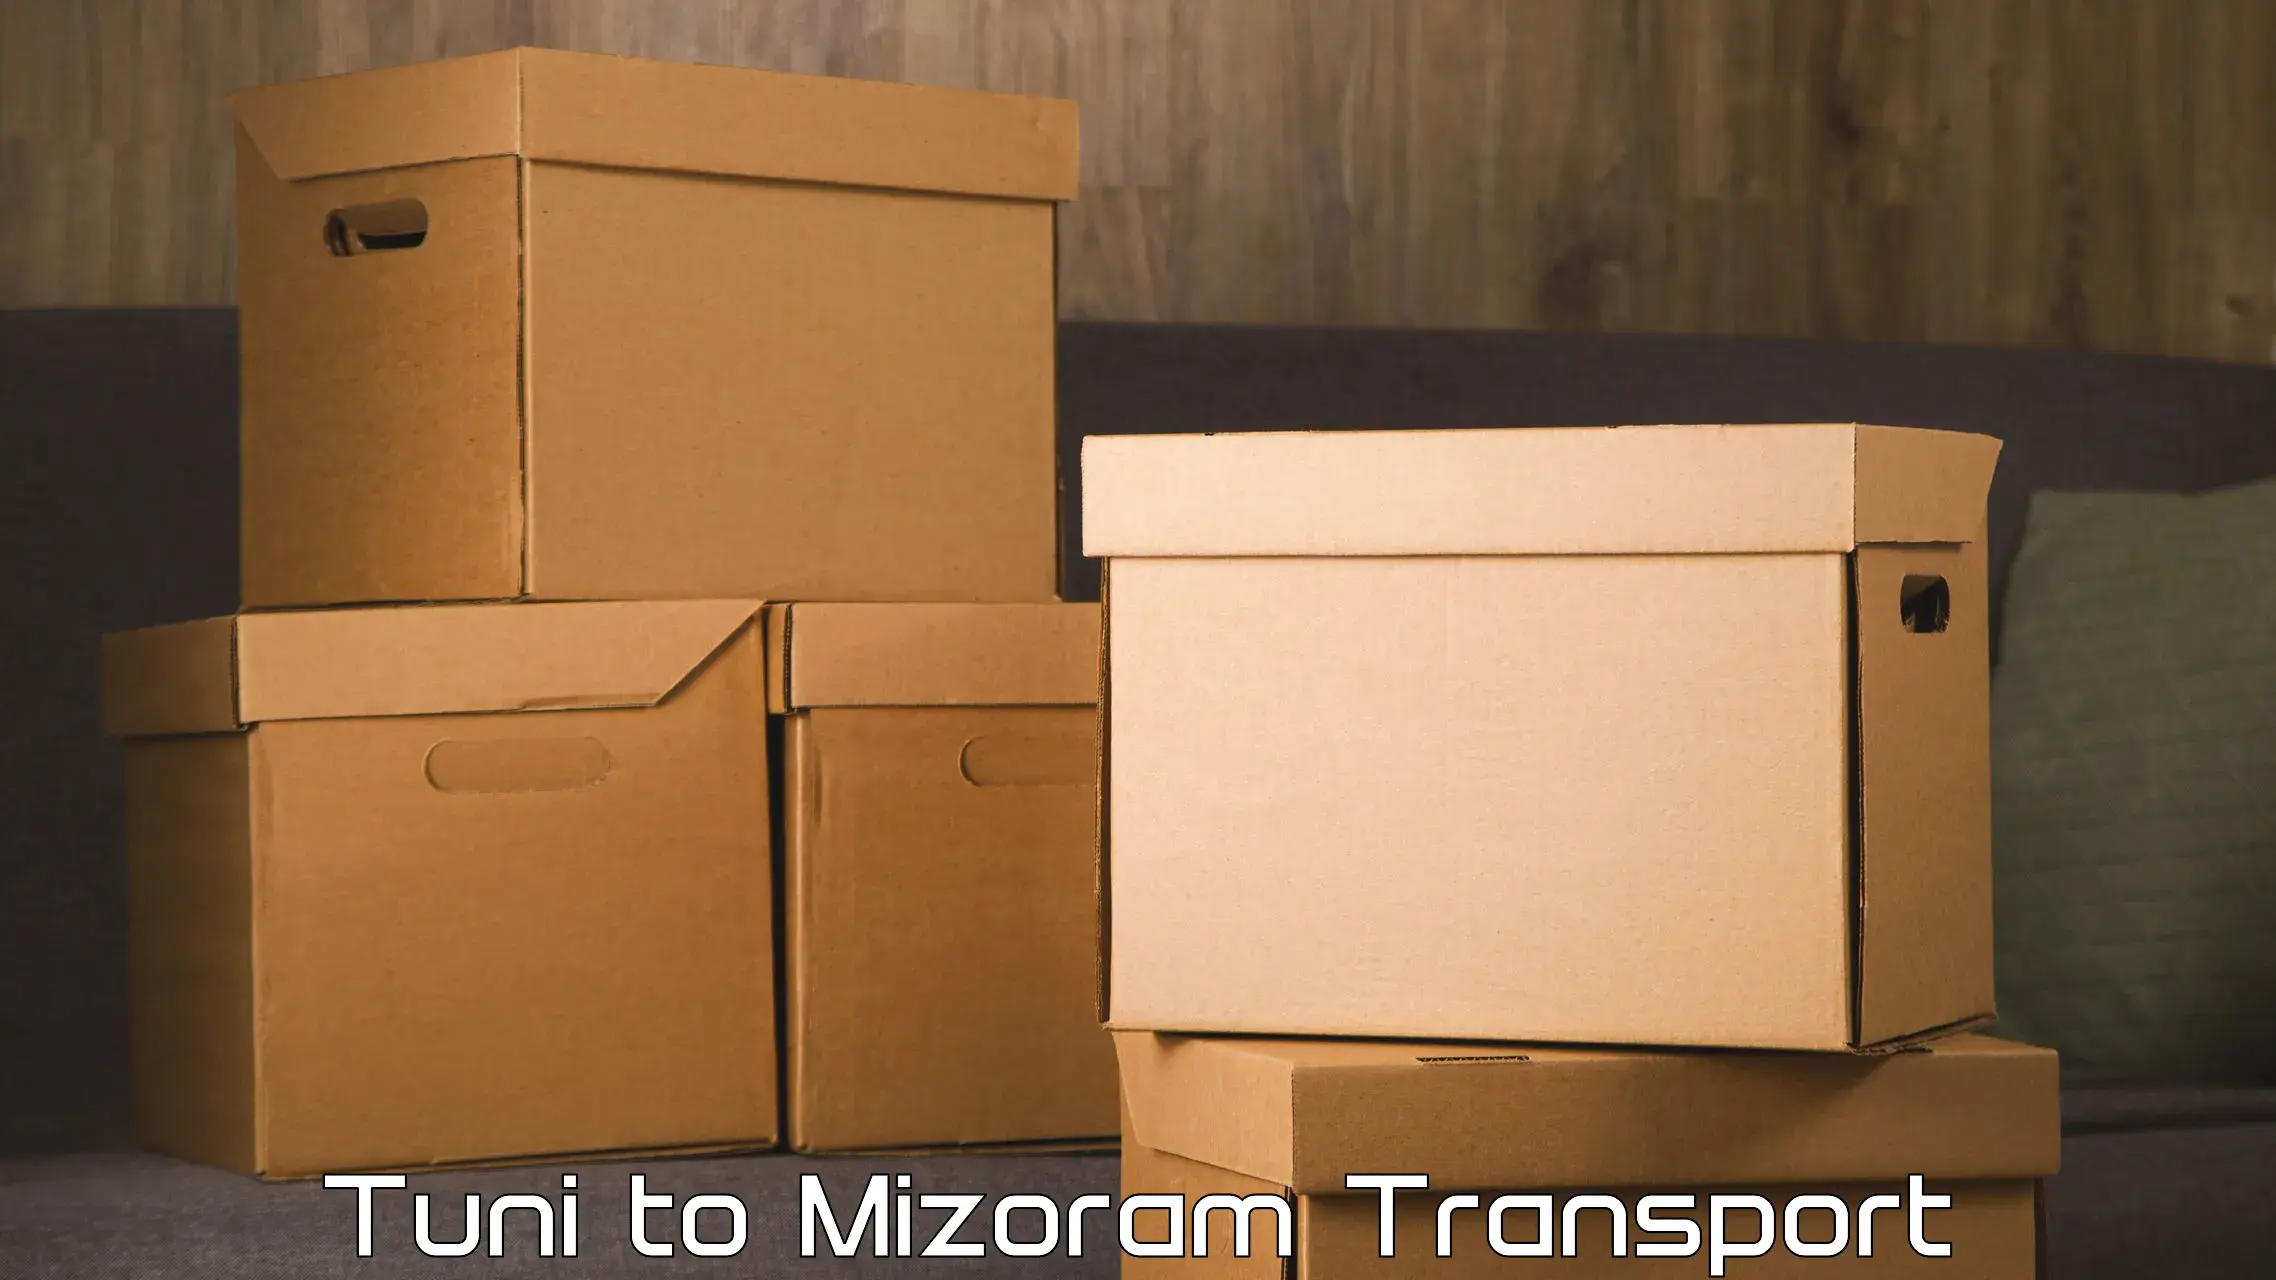 India truck logistics services Tuni to Mizoram